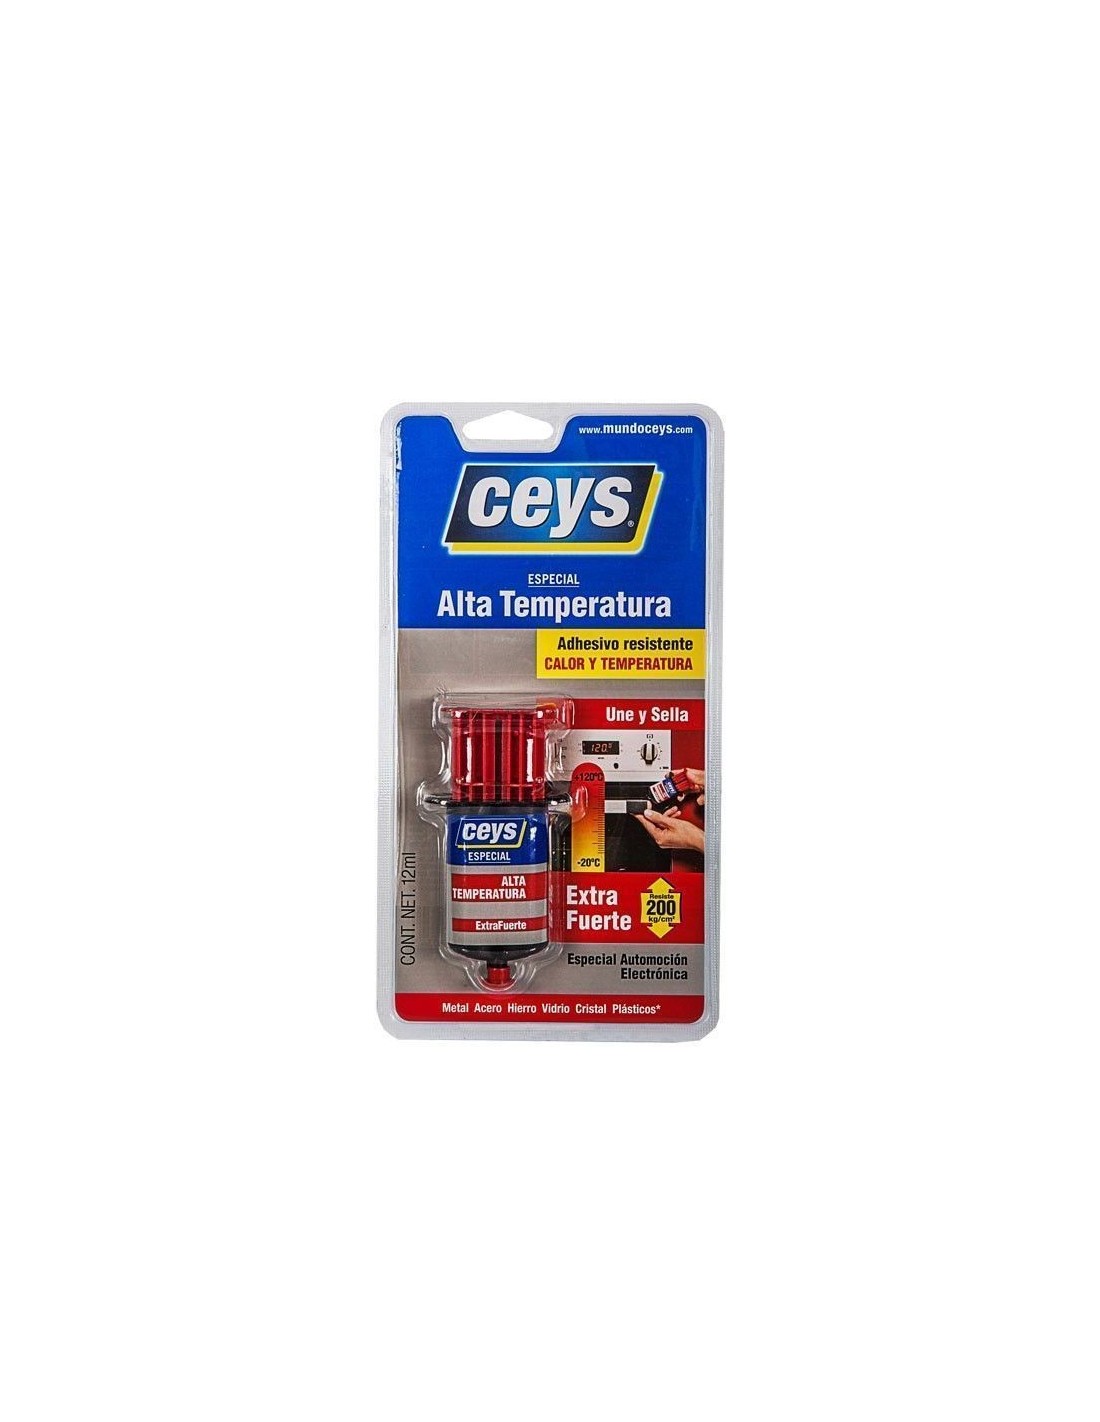 Ceys incorpora dos nuevos colores a su gama de adhesivos